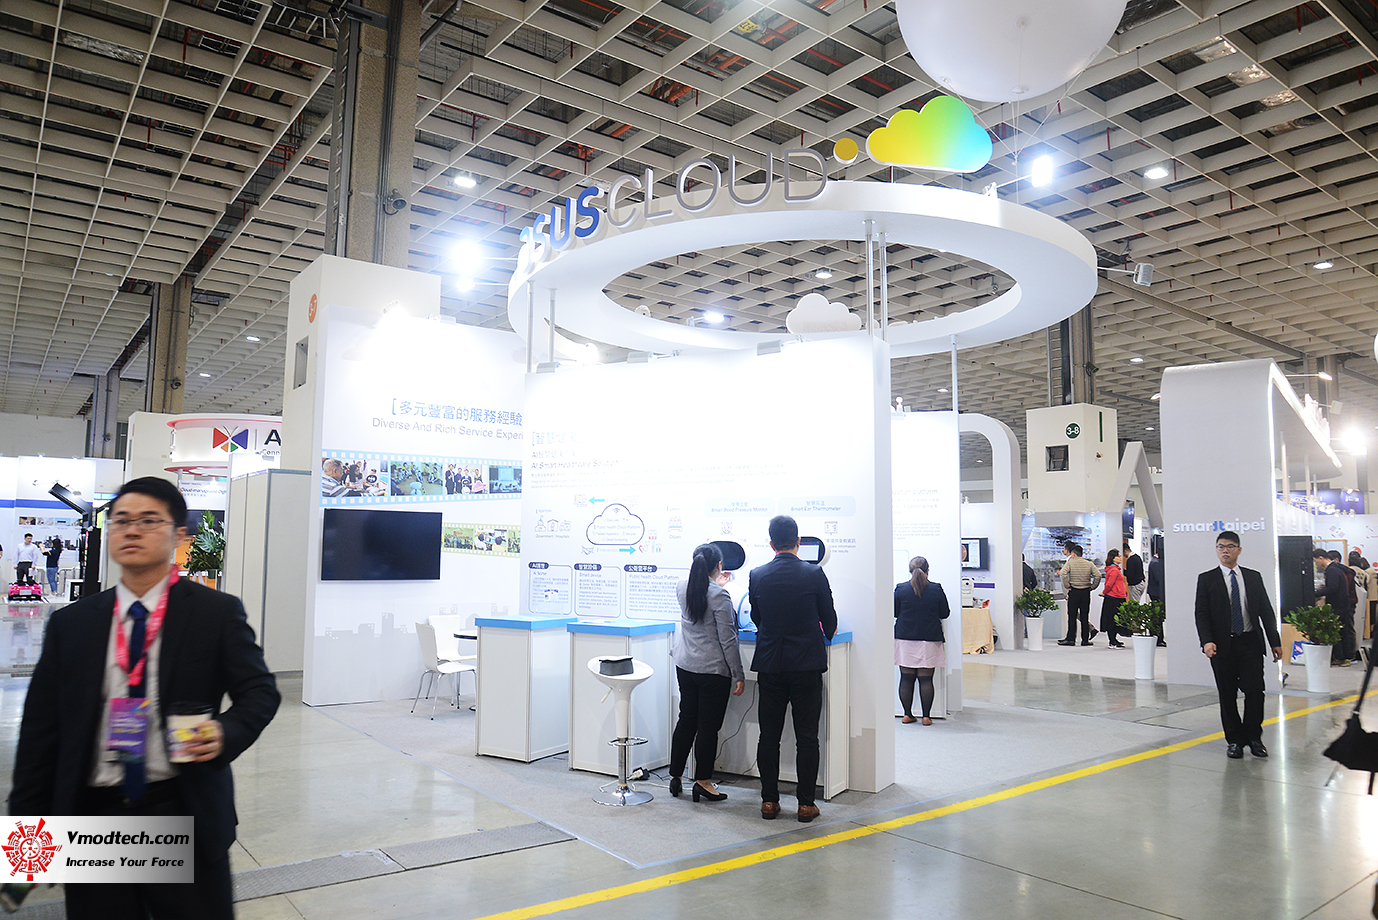 dsc 8195 เยี่ยมชมพิธีเปิด 2019 SMART CITY SUMMIT & EXPO ณ กรุงไทเป ประเทศไต้หวัน 